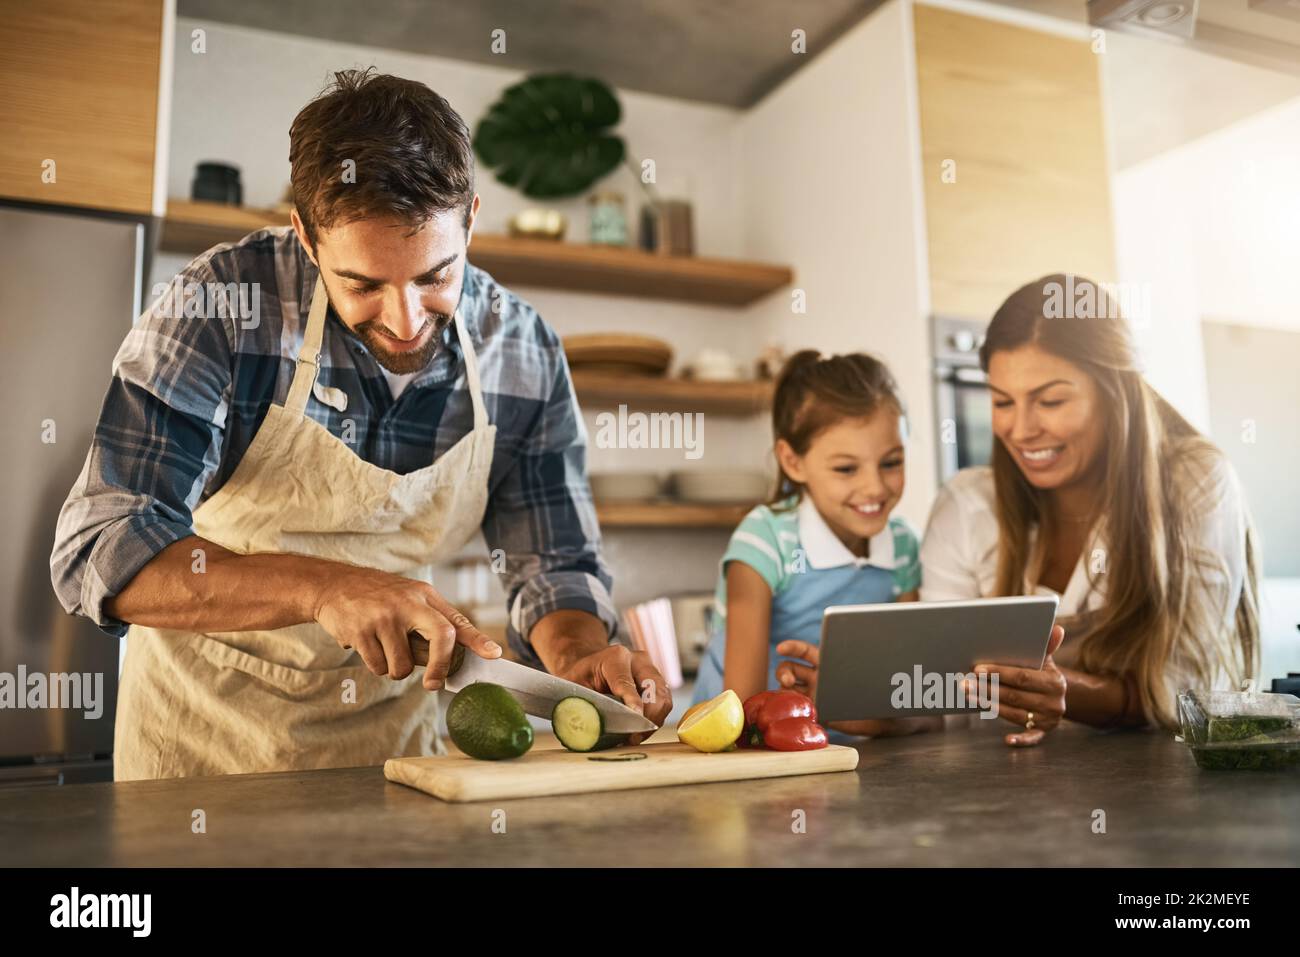 Cuisson selon leurs instructions. Photo de deux parents heureux et de leur jeune fille essayant ensemble une nouvelle recette dans la cuisine. Banque D'Images